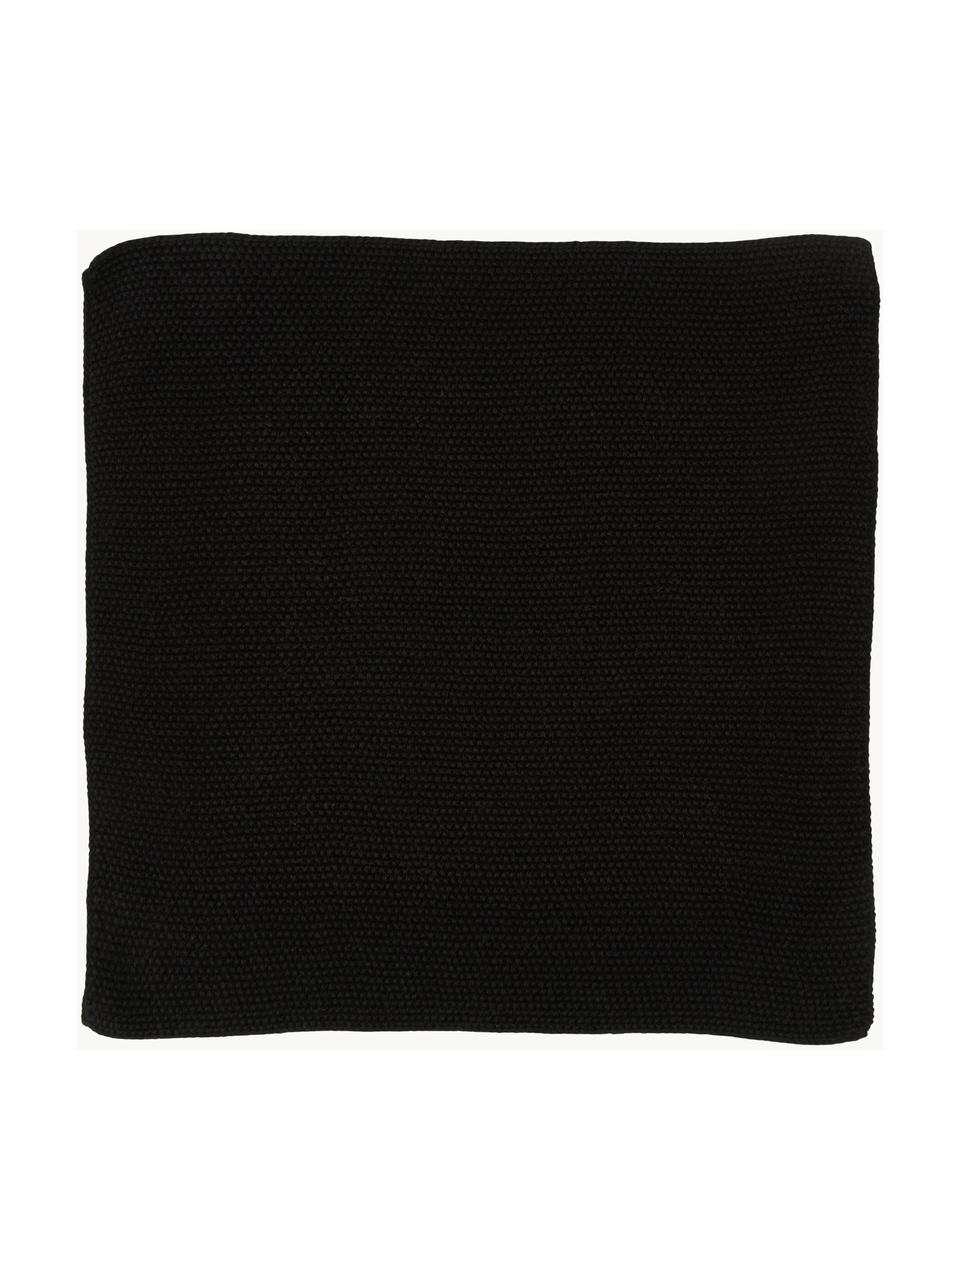 Torchons en coton Soft, 3 pièces, 100 % coton, Noir, larg. 29 x long. 30 cm